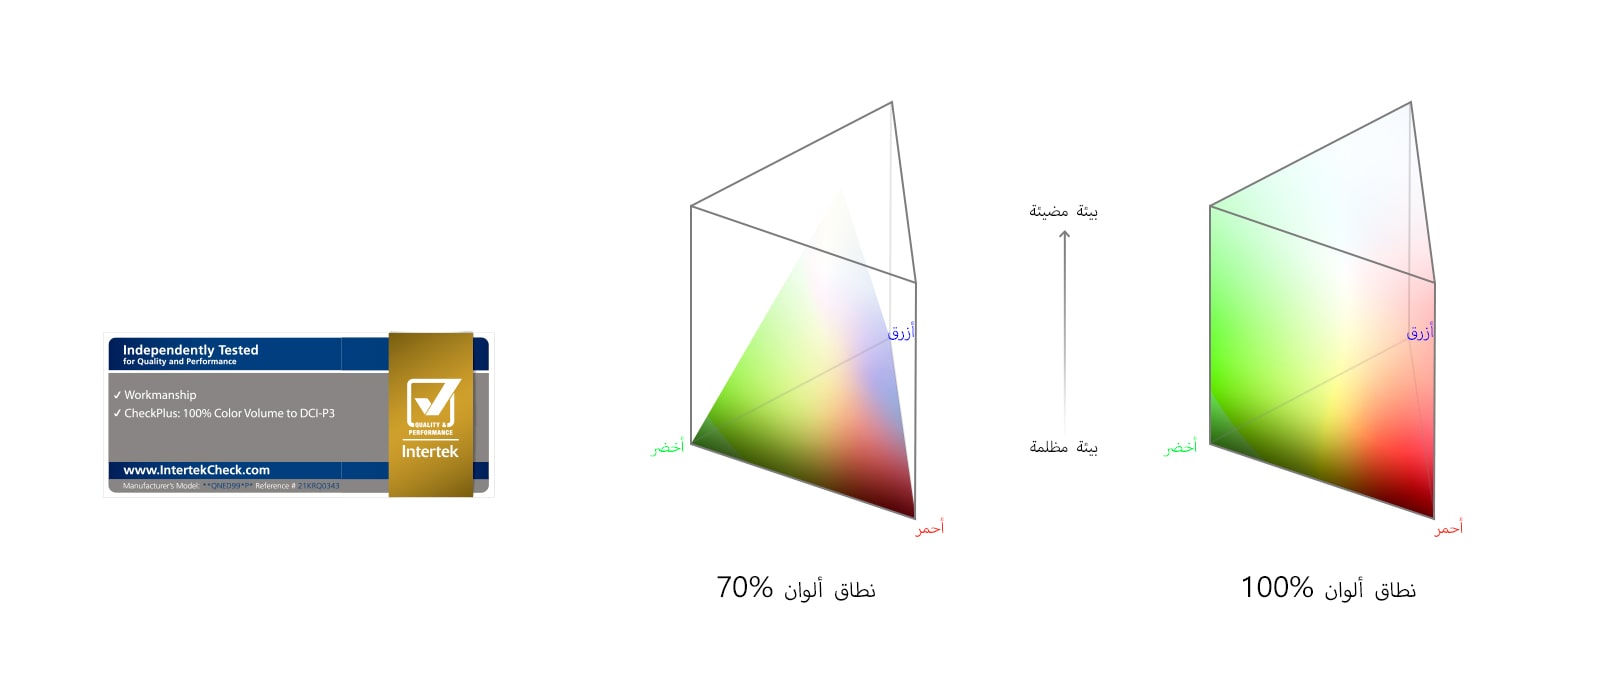 مخططات متجانبة توضح أطياف حجم اللون. يظهر المخطط الأيسر أن 70% من الألوان غير قادرة على الوصول إلى الحواف العلوية. يظهر المخطط الأيمن وصول الألوان إلى الحواف الخارجية في جميع الأماكن بنسبة 100%.